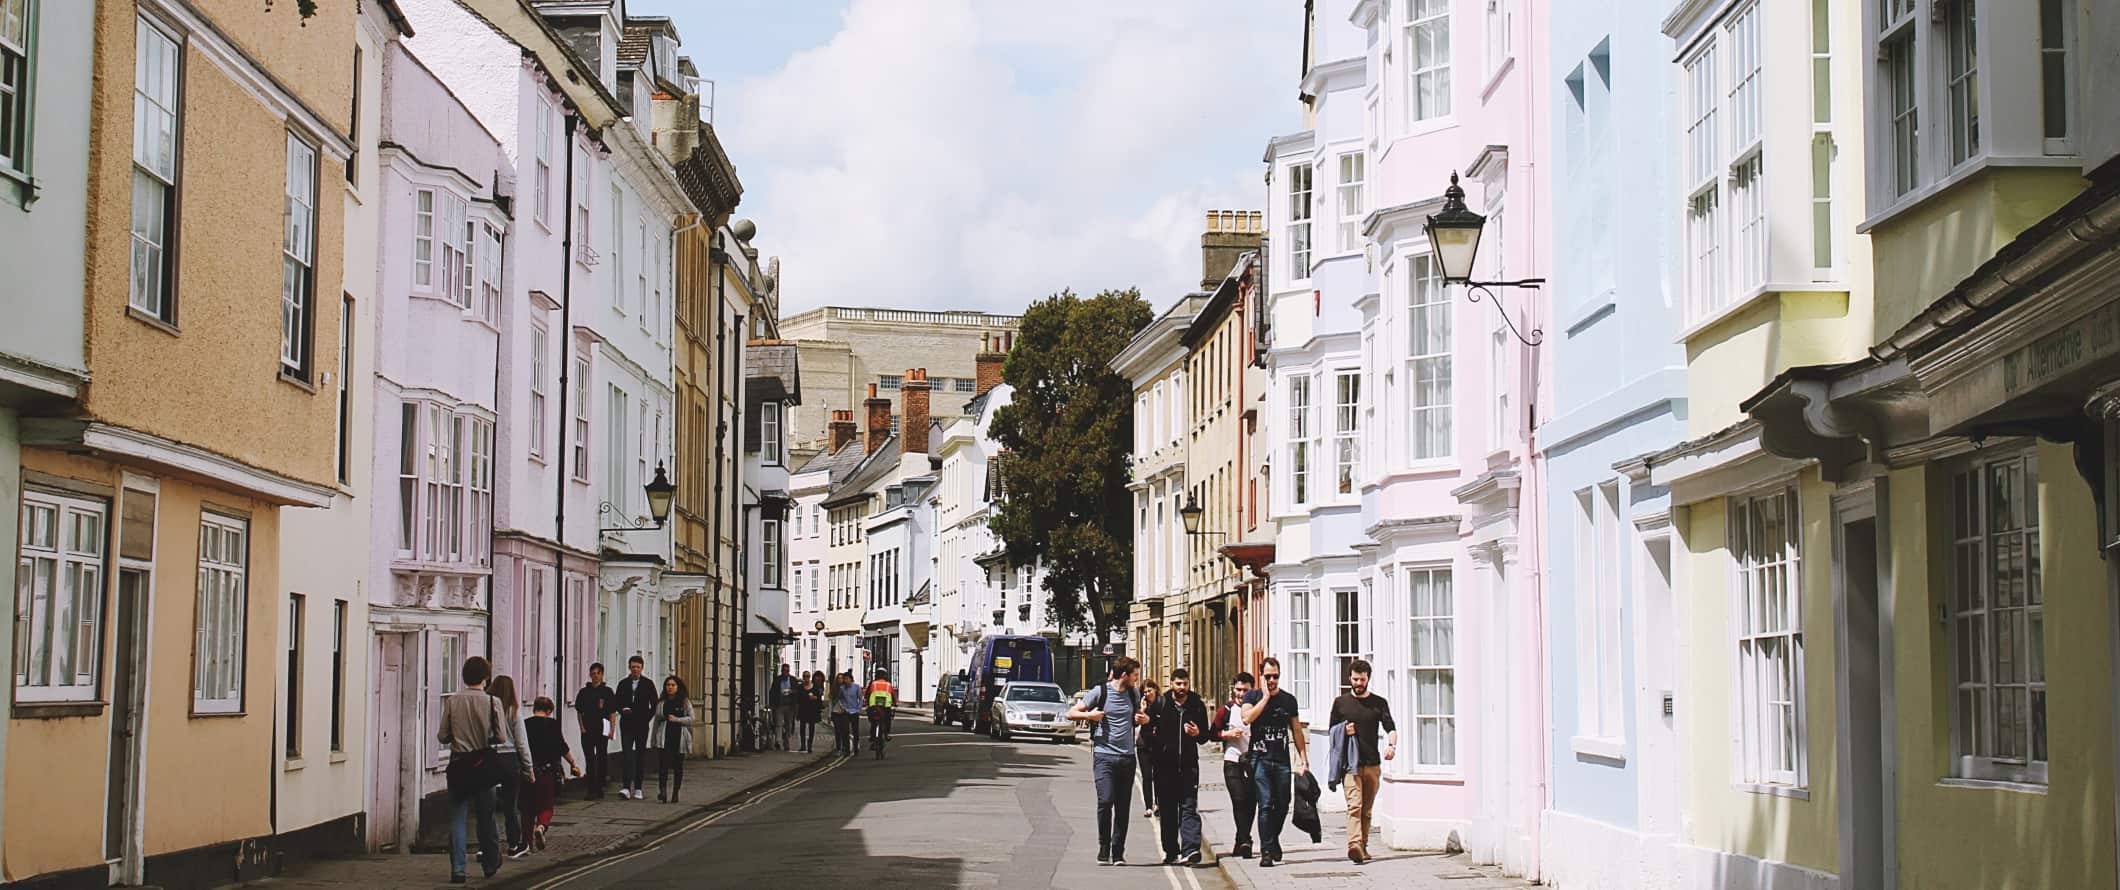 Pessoas caminham por uma rua repleta de casas em tons pastéis em Oxford, Inglaterra.